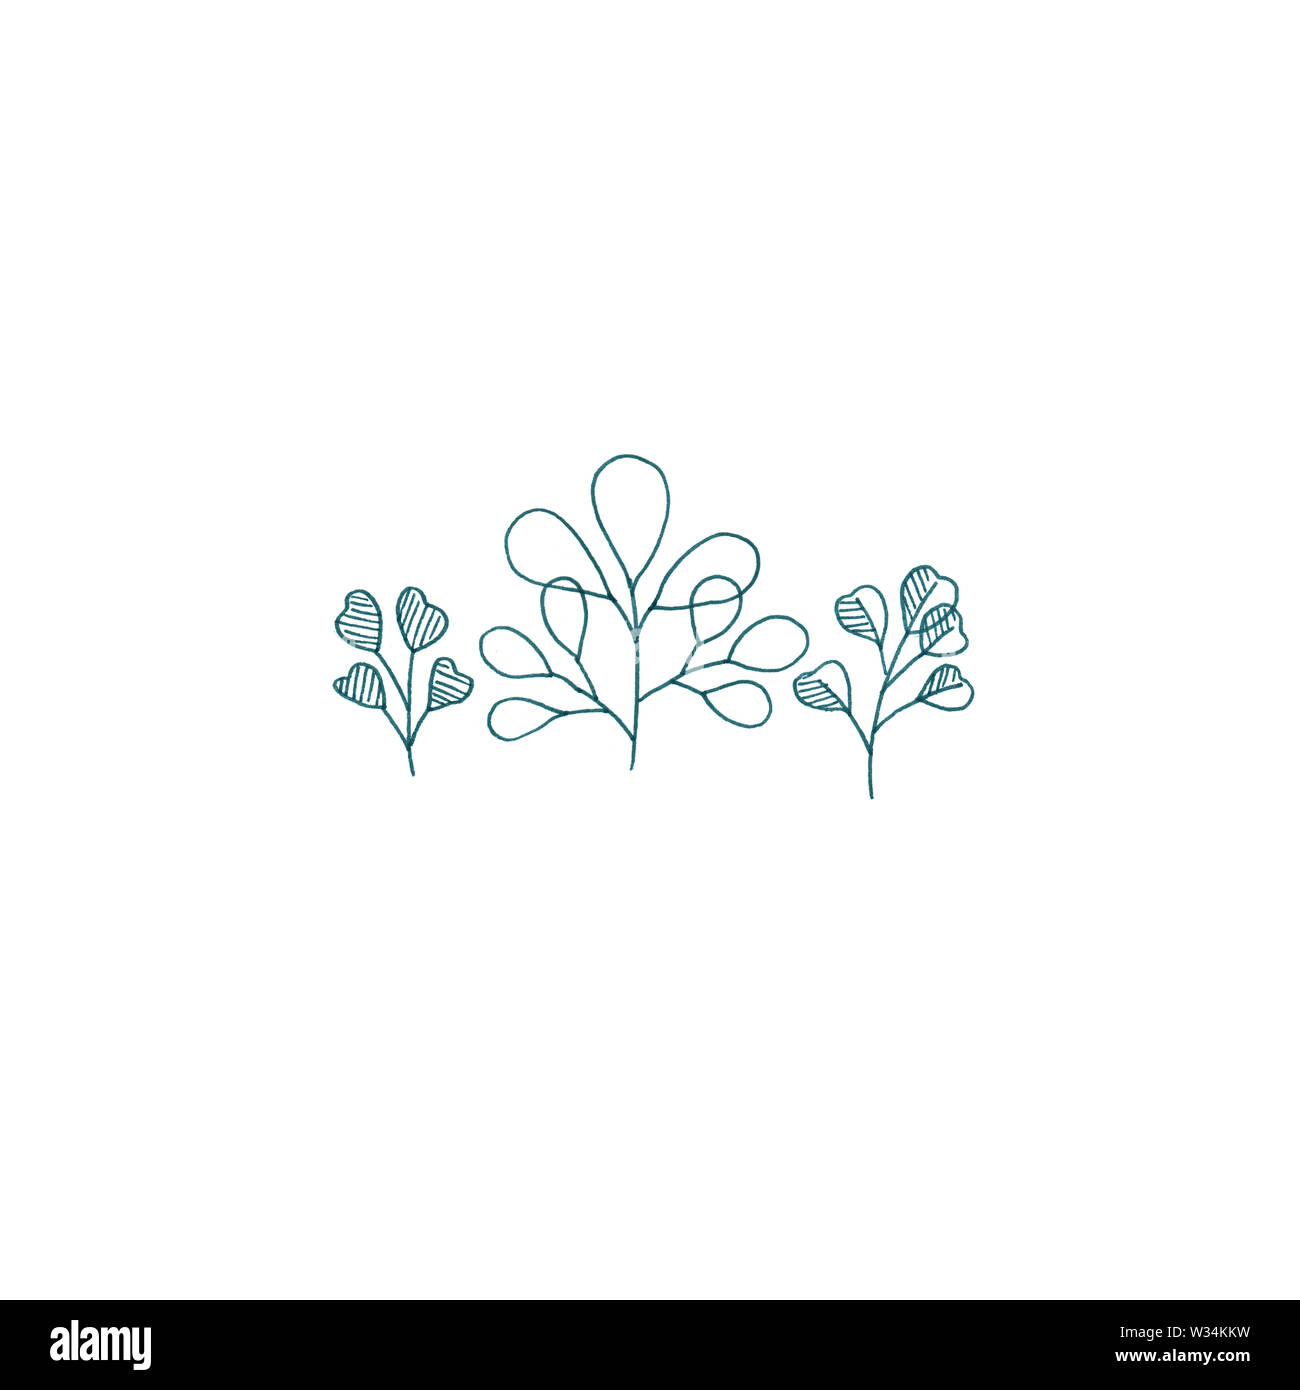 Eucalipto Silverdollar carino illustrazione botanica, floreale illustrazione minimale del bouquet di tre eucalypti in stile rustico. Foto Stock